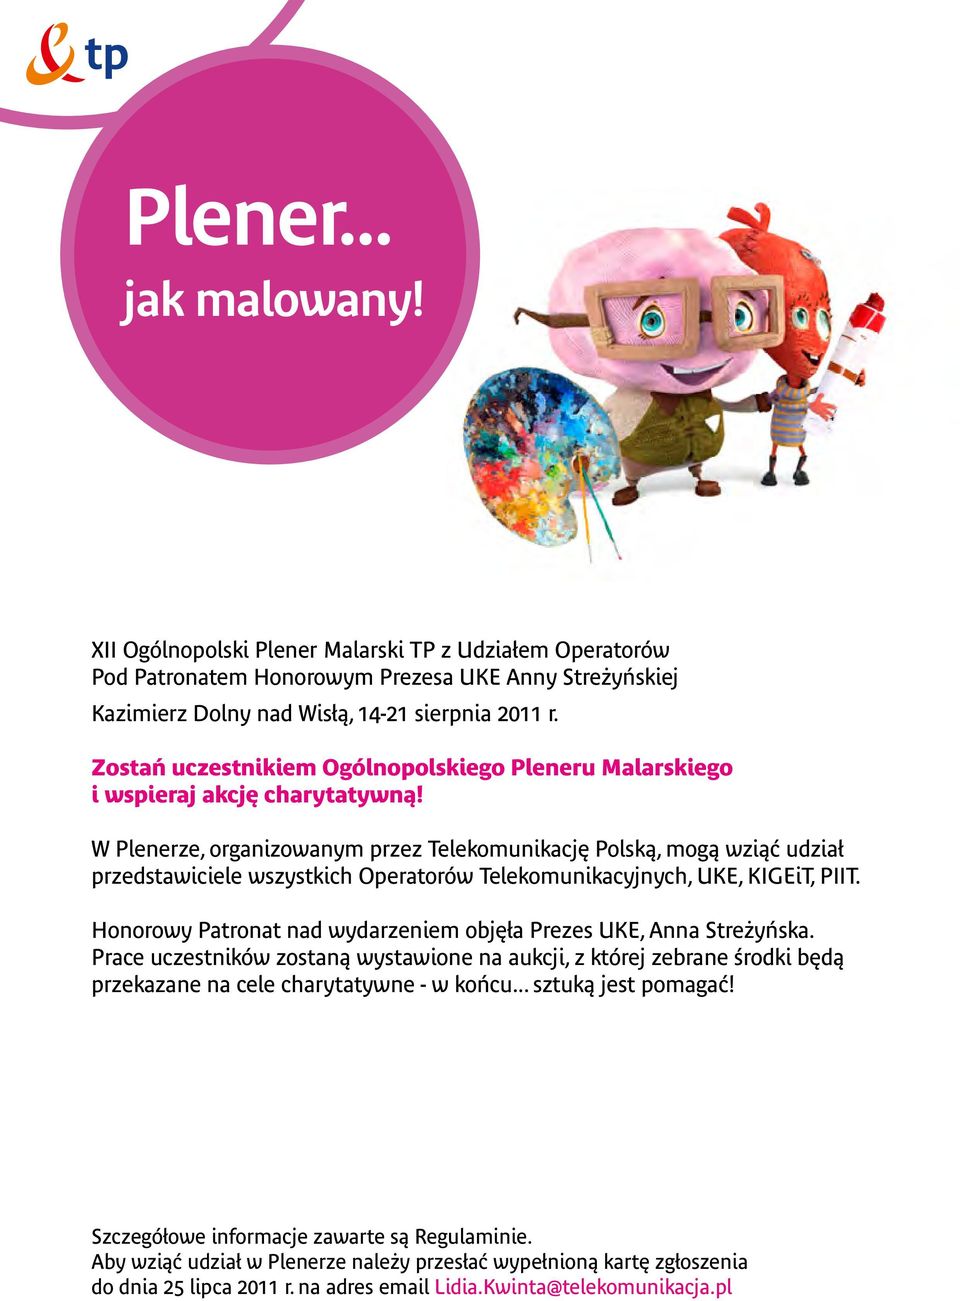 W Plenerze, organizowanym przez Telekomunikację Polską, mogą wziąć udział przedstawiciele wszystkich Operatorów Telekomunikacyjnych, UKE, KIGEiT, PIIT.